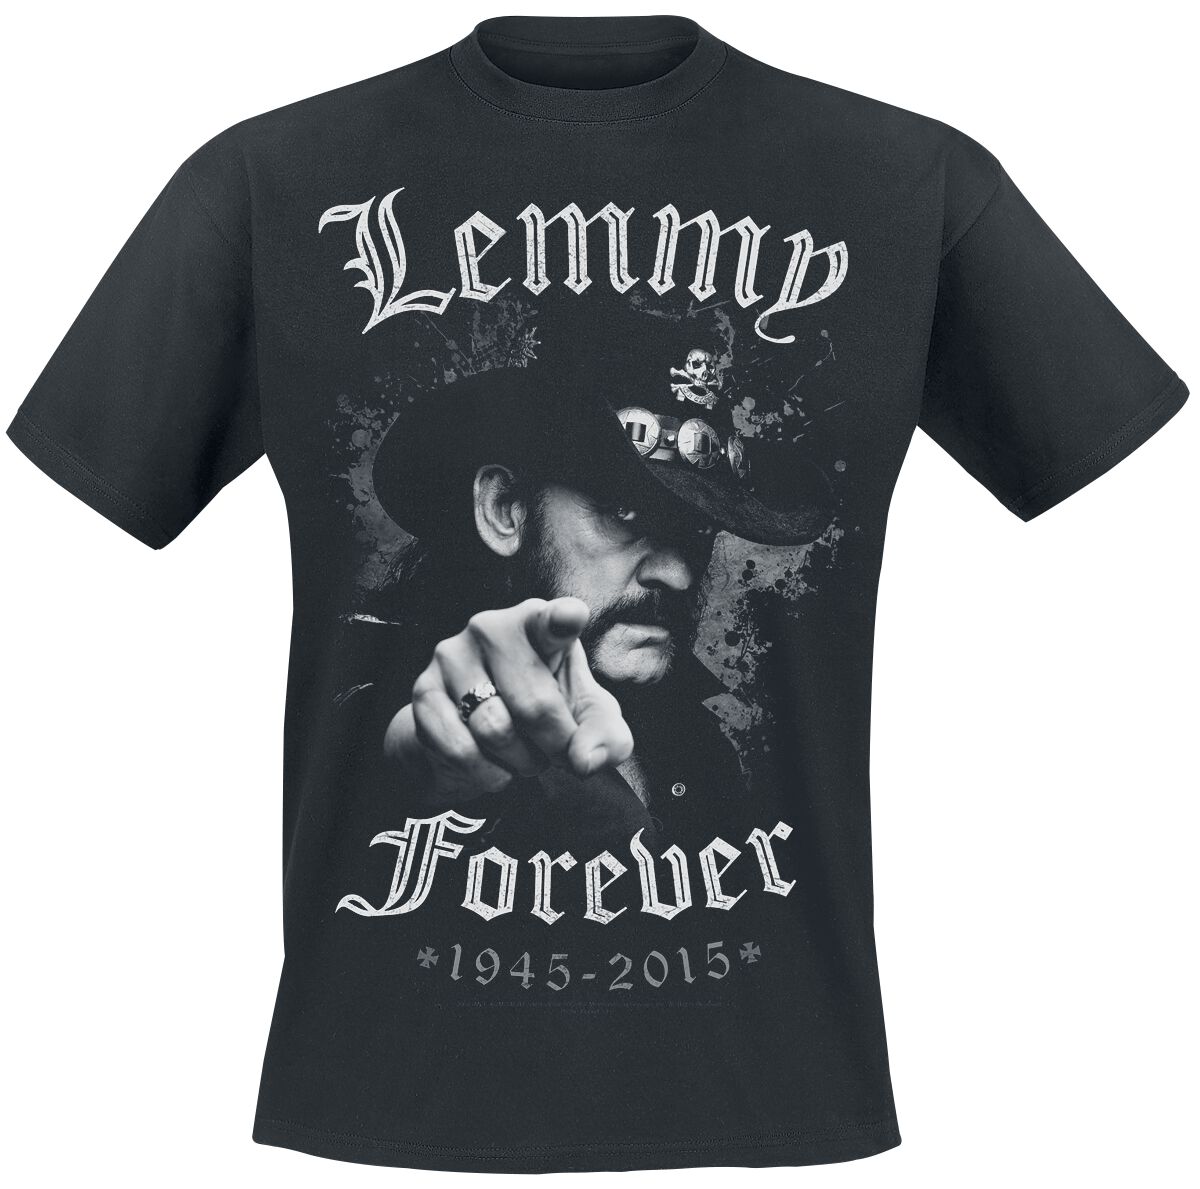 Motörhead T-Shirt - Lemmy - Forever - M bis 5XL - für Männer - Größe 3XL - schwarz  - EMP exklusives Merchandise!